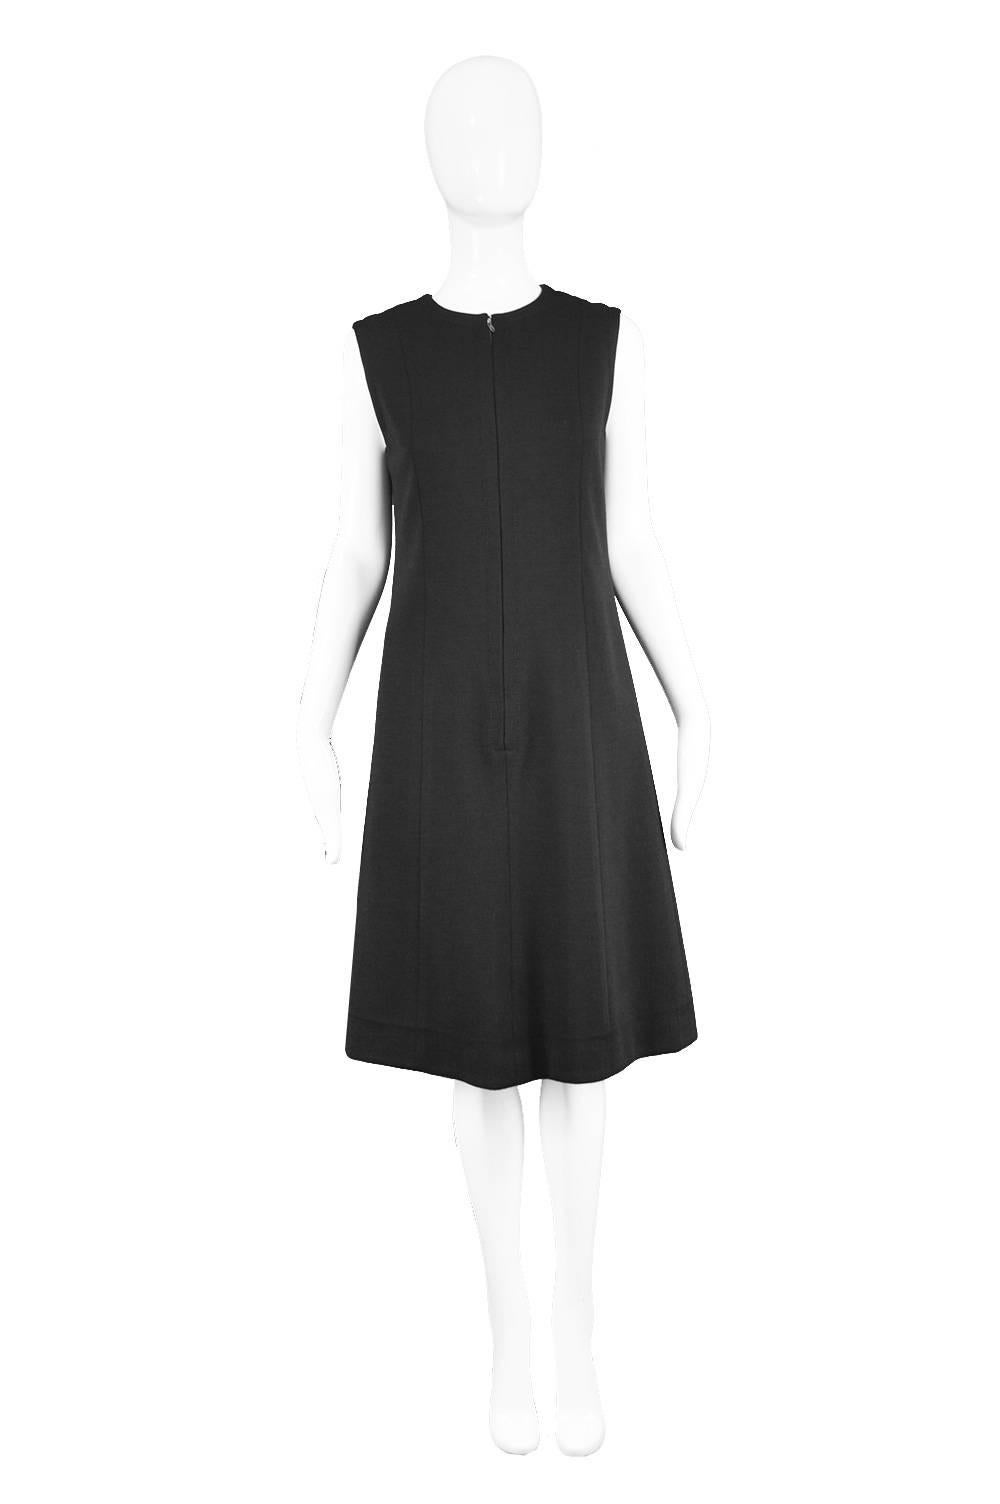 Jean Patou Vintage 1960s Black Wool Sleeveless Mod Cocktail Shift Dress 

Estimated Size: UK 10/ US 6/ EU 38. Please check measurements.
Bust - 34” / 86cm
Waist - 32” / 81cm
Hips - 38” / 96cm
Length (Shoulder to Hem) - 39” / 99cm

Condition: